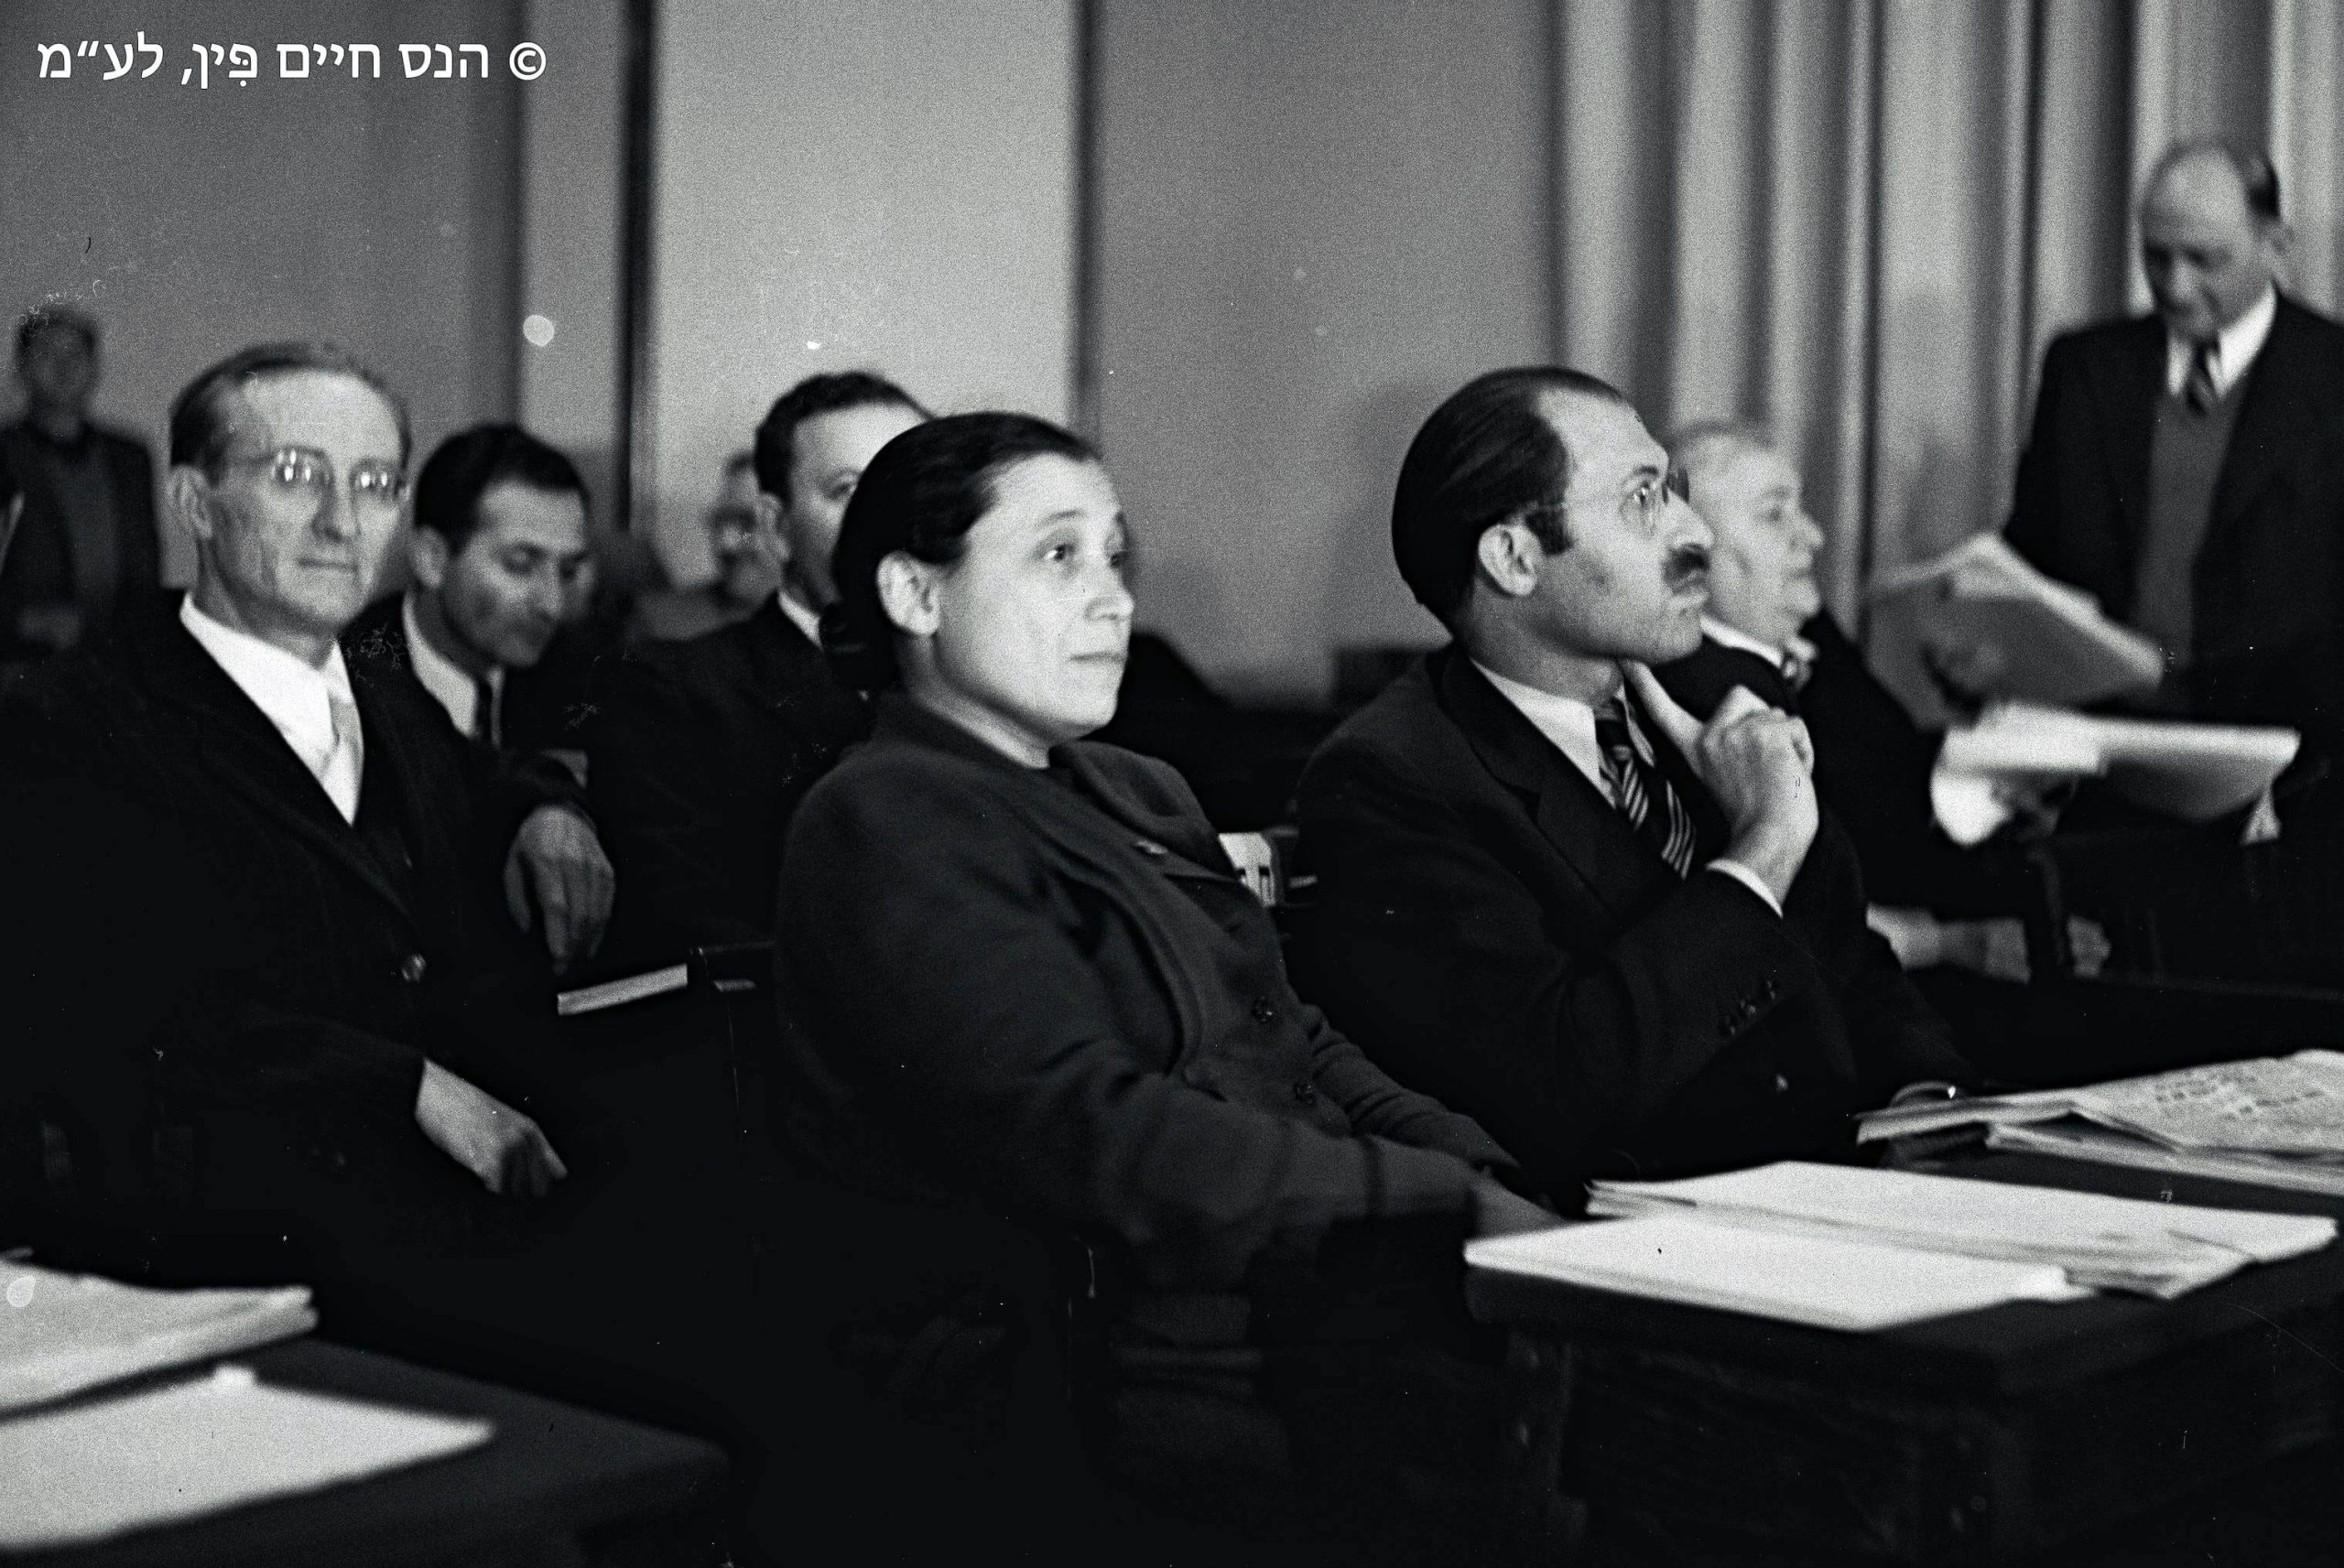 ישיבת הכנסת הראשונה בירושלים. משמאל לימין, אורי צבי גרינברג, אסתר רזיאל נאור ומנחם בגין